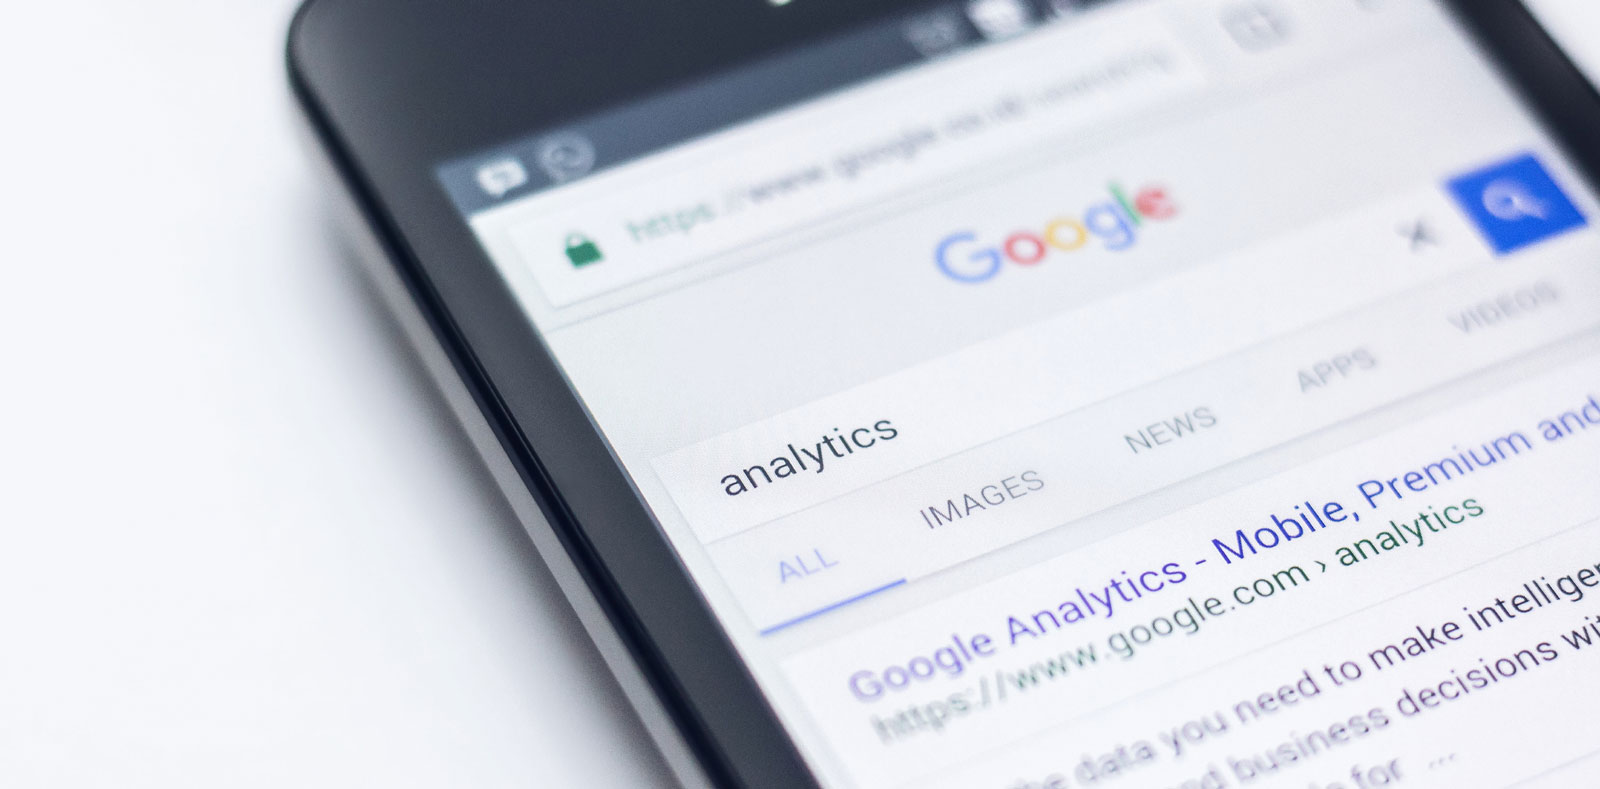 Qué es Google Analytics